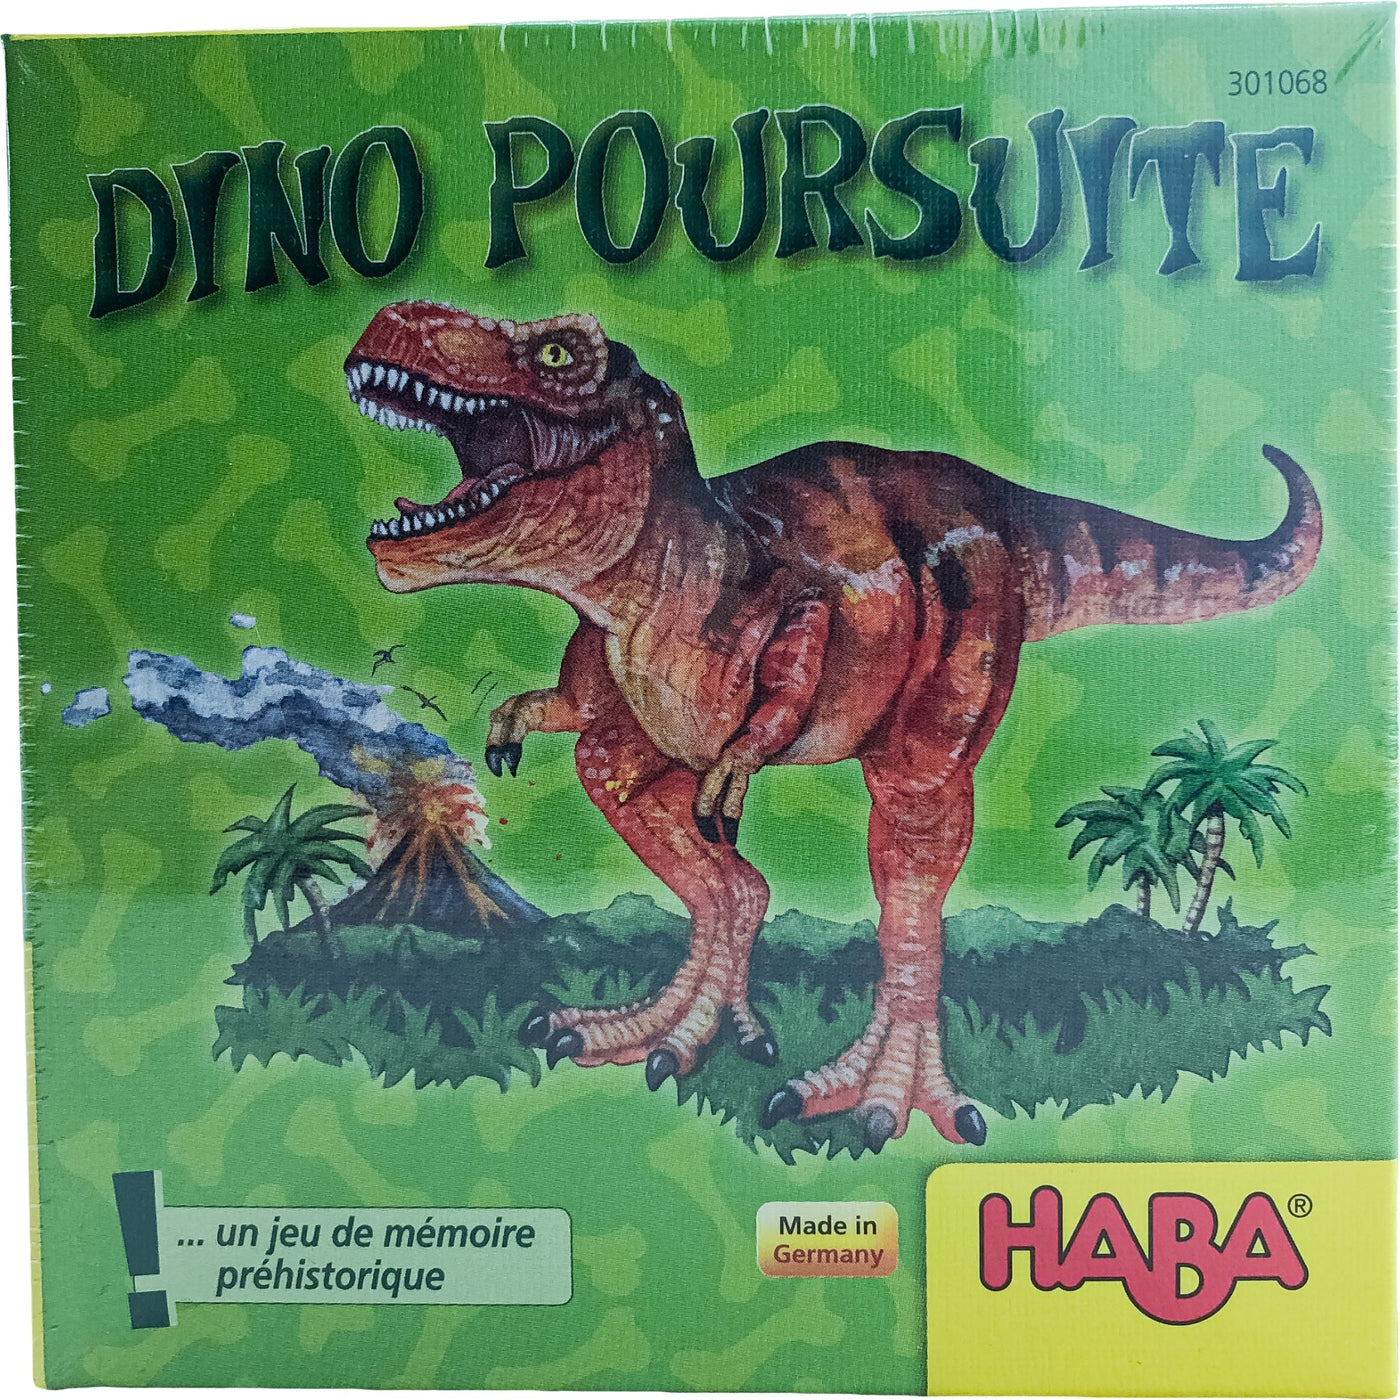 Jeu de mémoire "Poursuite de dinosaures" de seconde main pour enfant à partir de 5 ans - photo principale